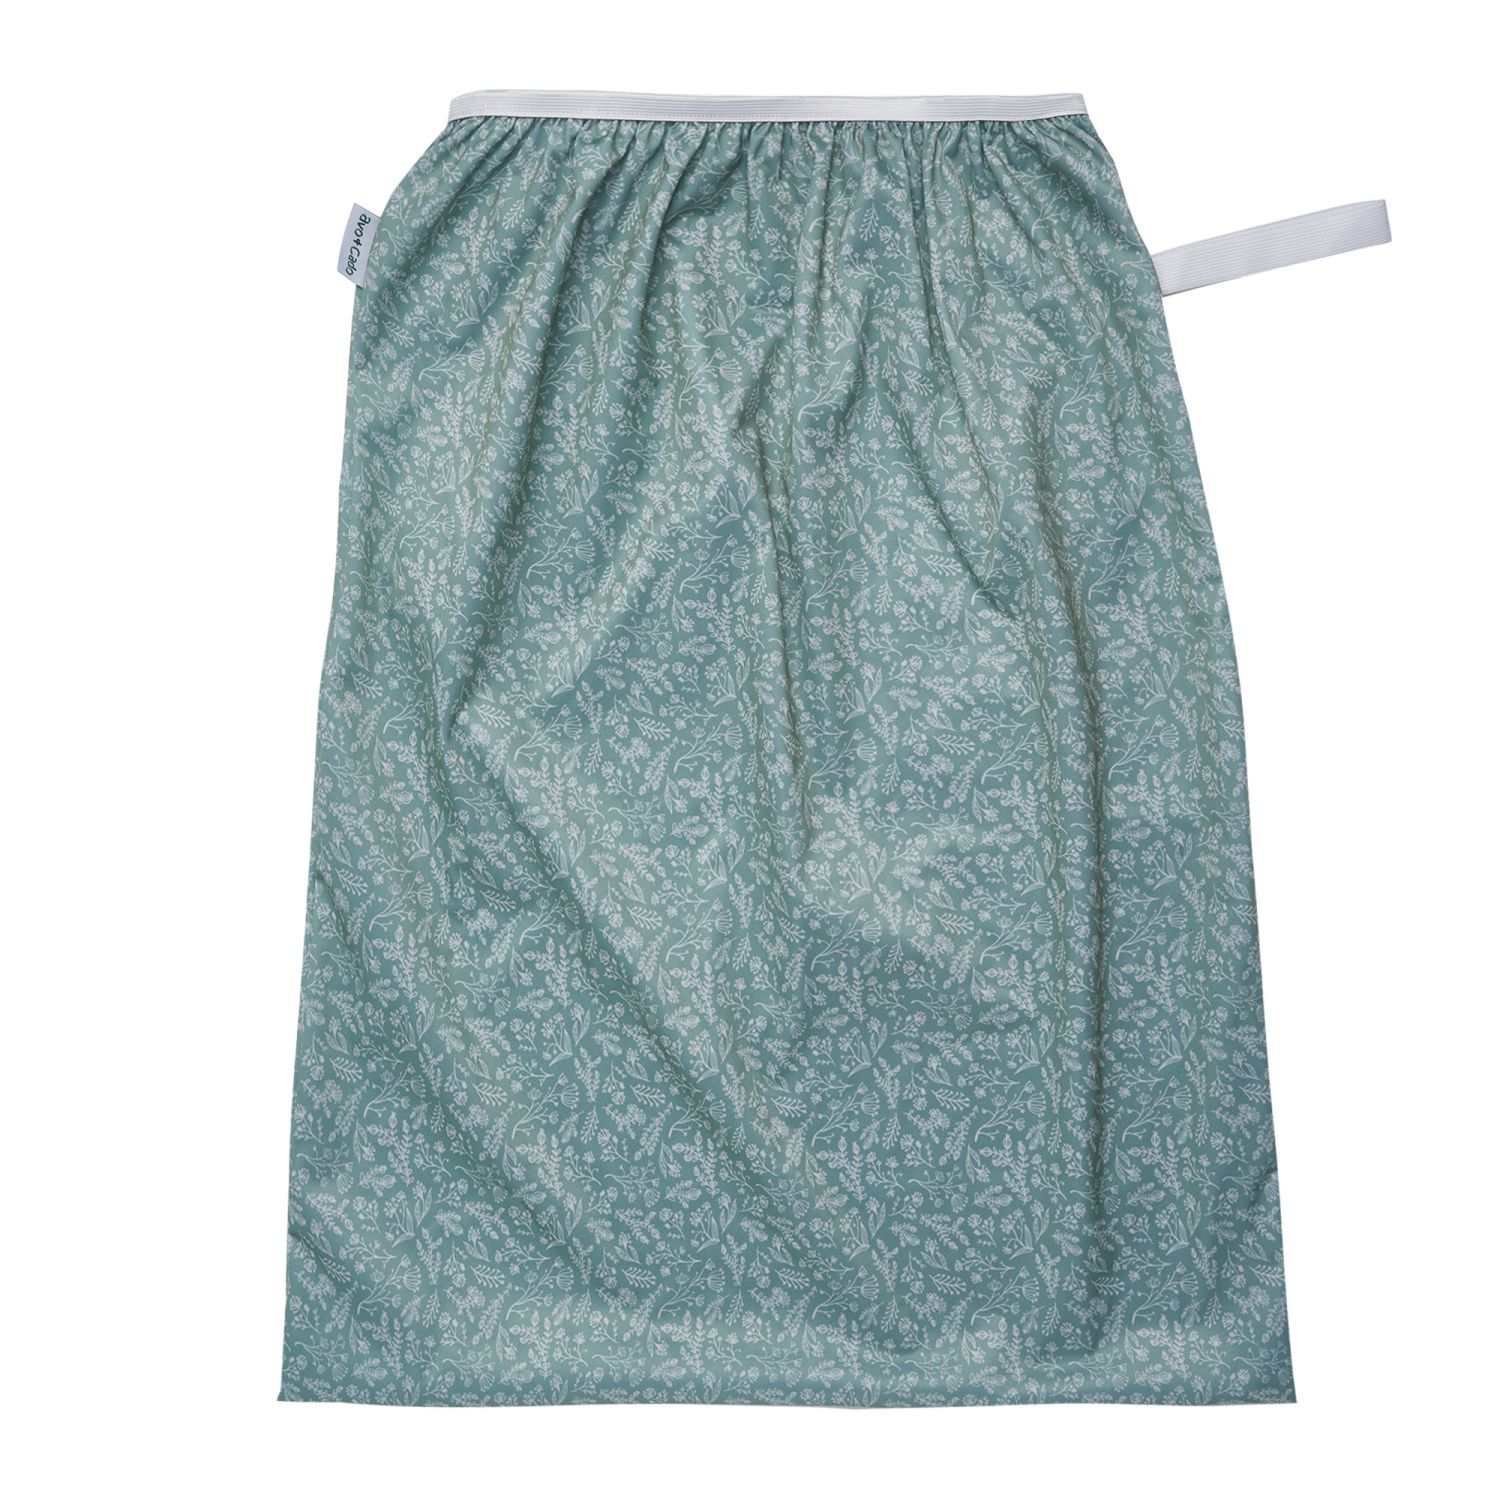 en Pail liner, dvs en stor pul-påse att sätta i en tvättkorg för förvaring av tygblöjor, i grönt med mönster utav vita blad och blommor. Från Avo&Cado. A pail liner for storing dirty cloth diapers in 